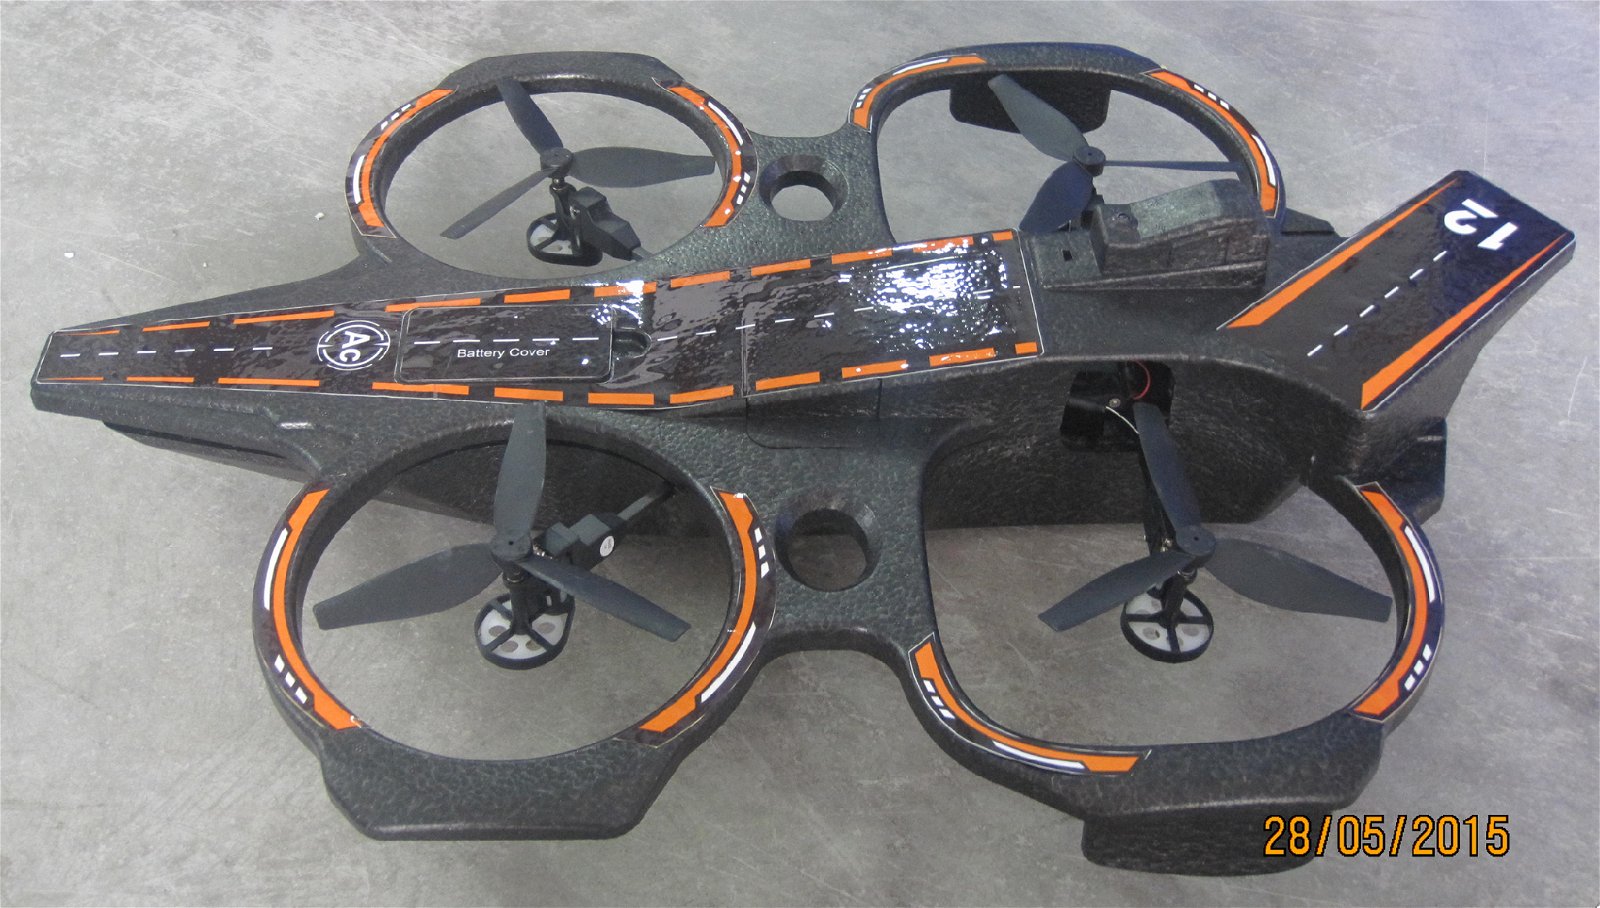 2.4G 6-Axis Gyro RC Quadrocopter UAV